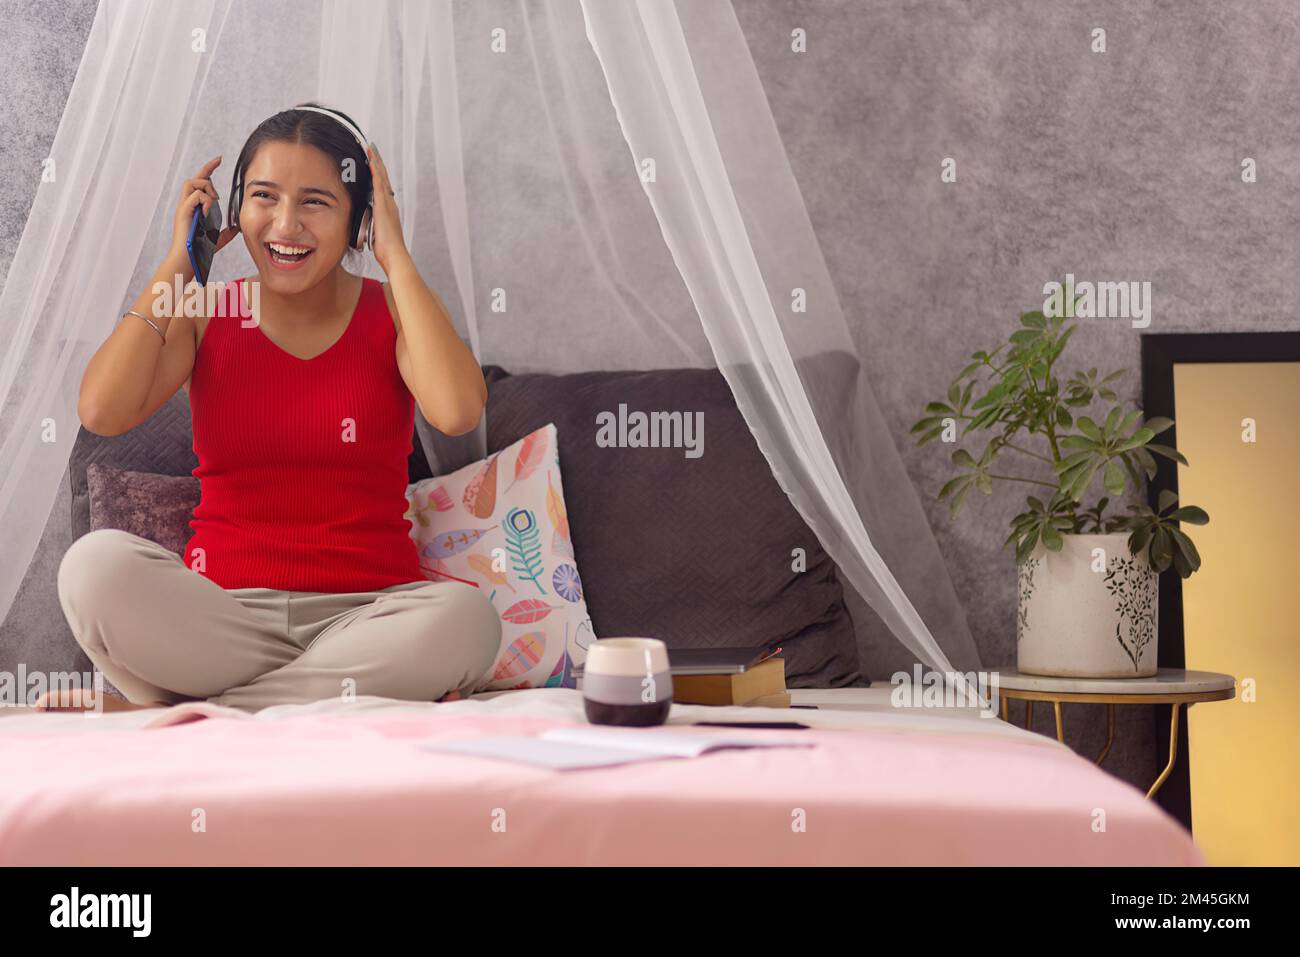 Fröhliches Teenager-Mädchen, das Musik über Kopfhörer hört, während es auf dem Bett sitzt Stockfoto